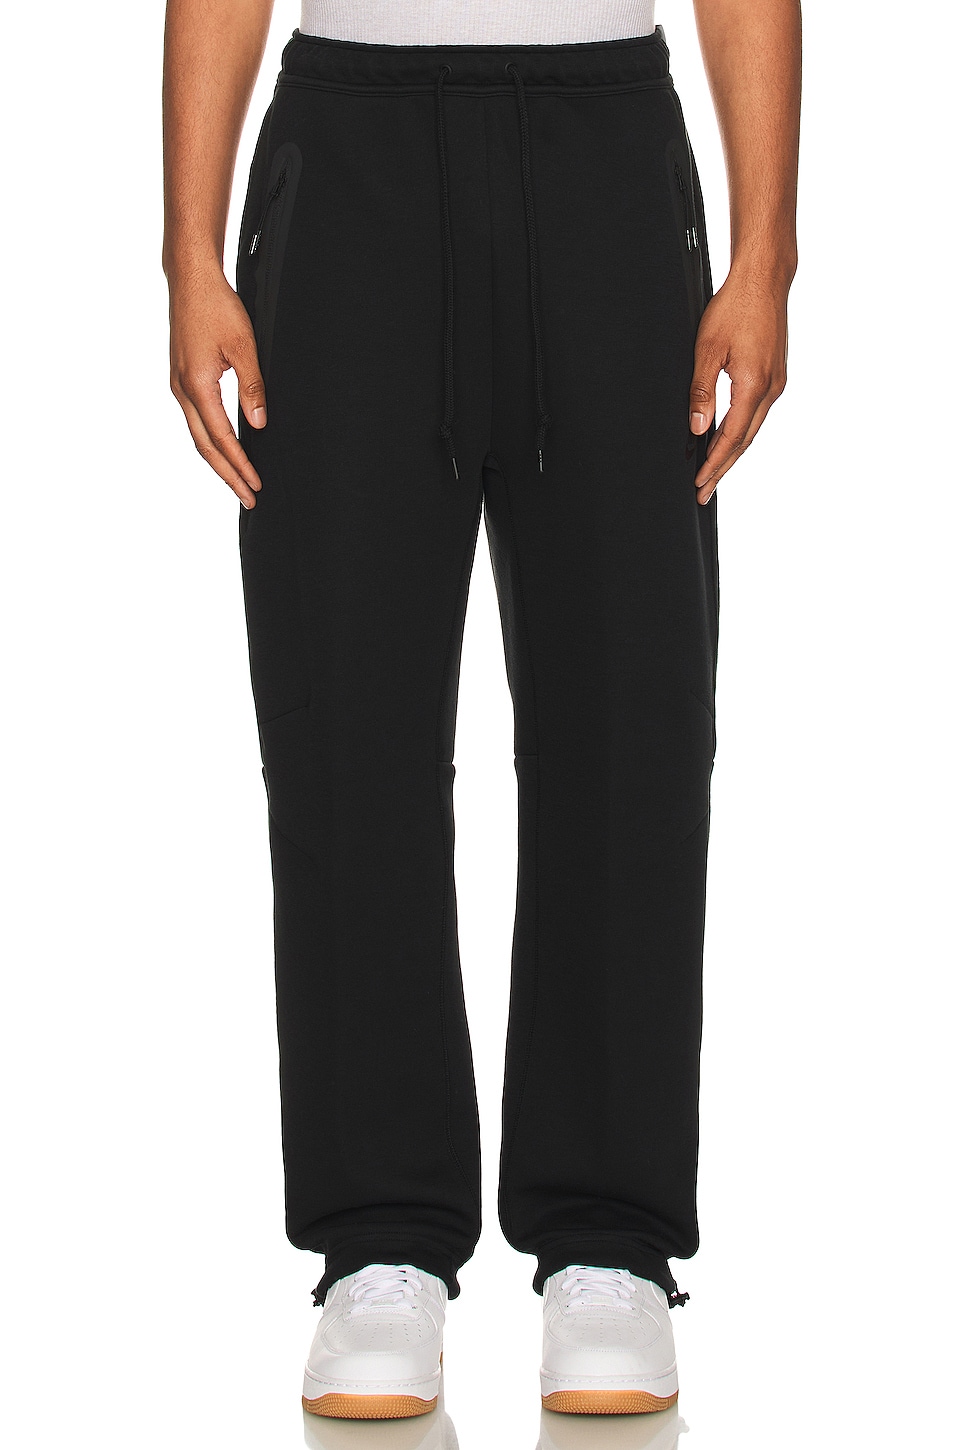 Nike Tech Fleece Open Pants in Black | REVOLVE